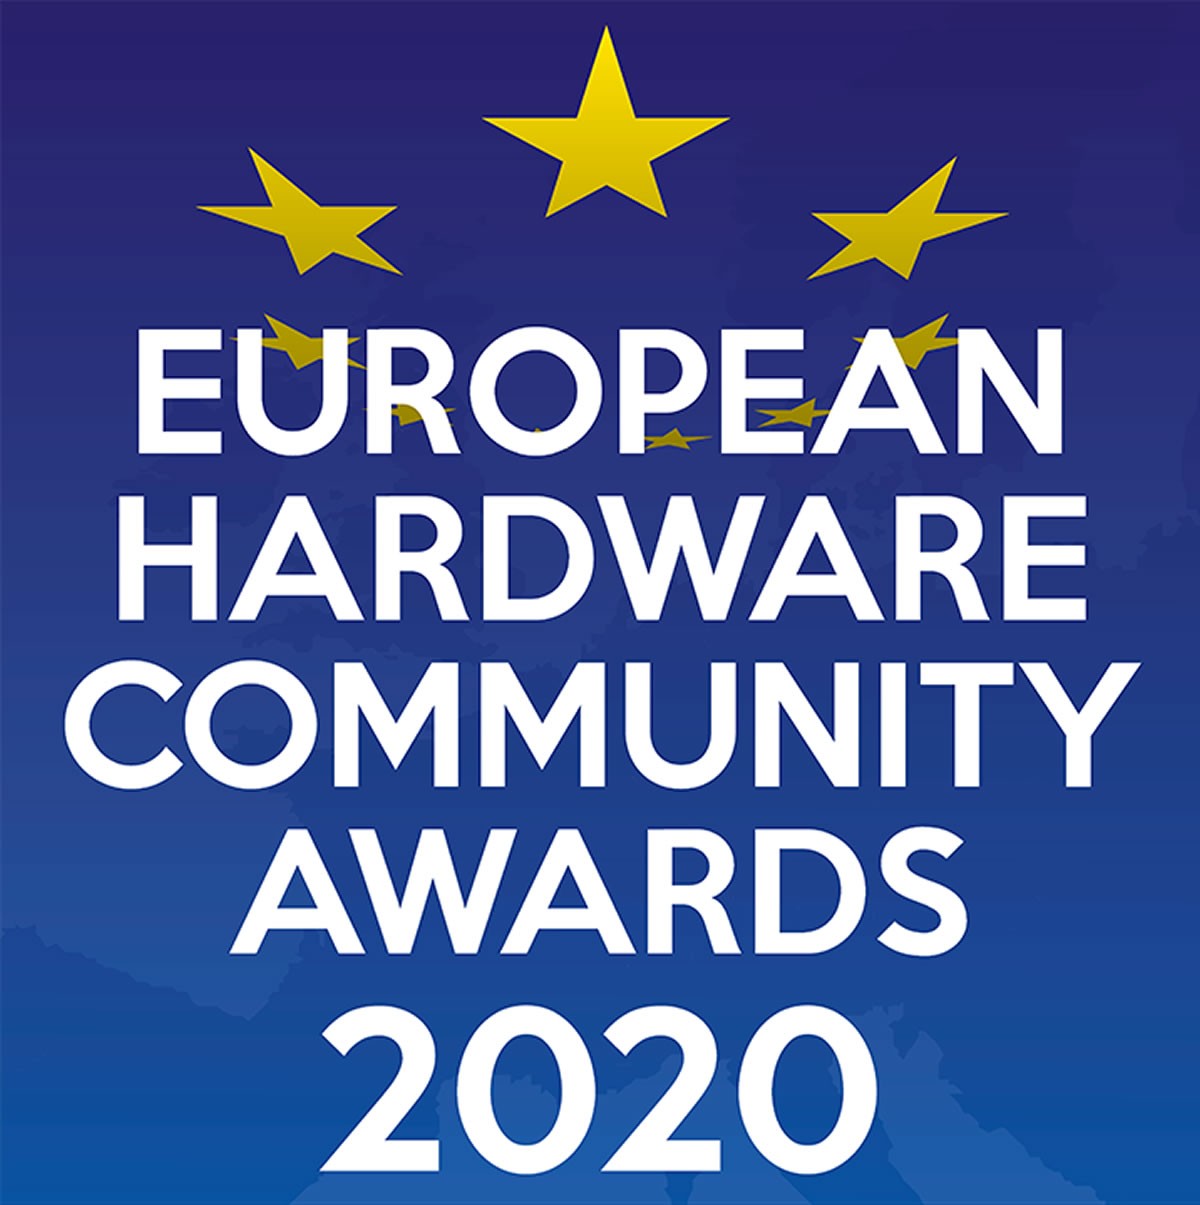 [Cowcotland] European Hardware Community Awards 2020 : Voilà les marques et produits les plus populaires en Europe